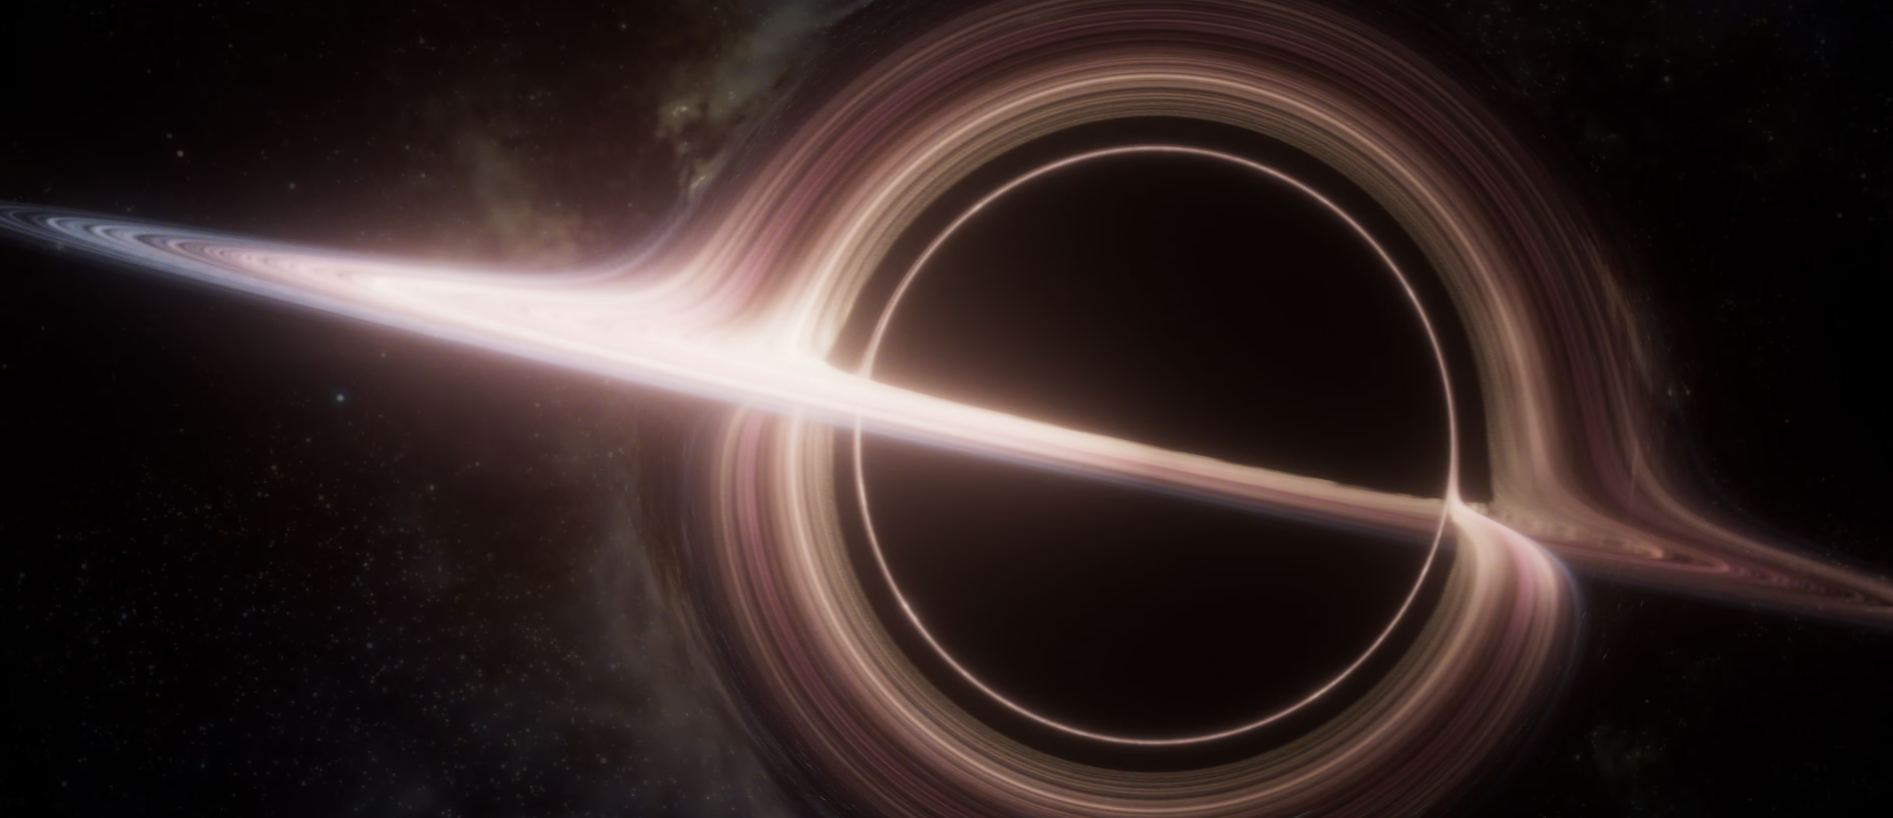 Naukowcy odkryli drugą najbliższą nam czarną dziurę - znajduje się ona w odległości 3 800 lat świetlnych i ma masę dziewięciu słońc